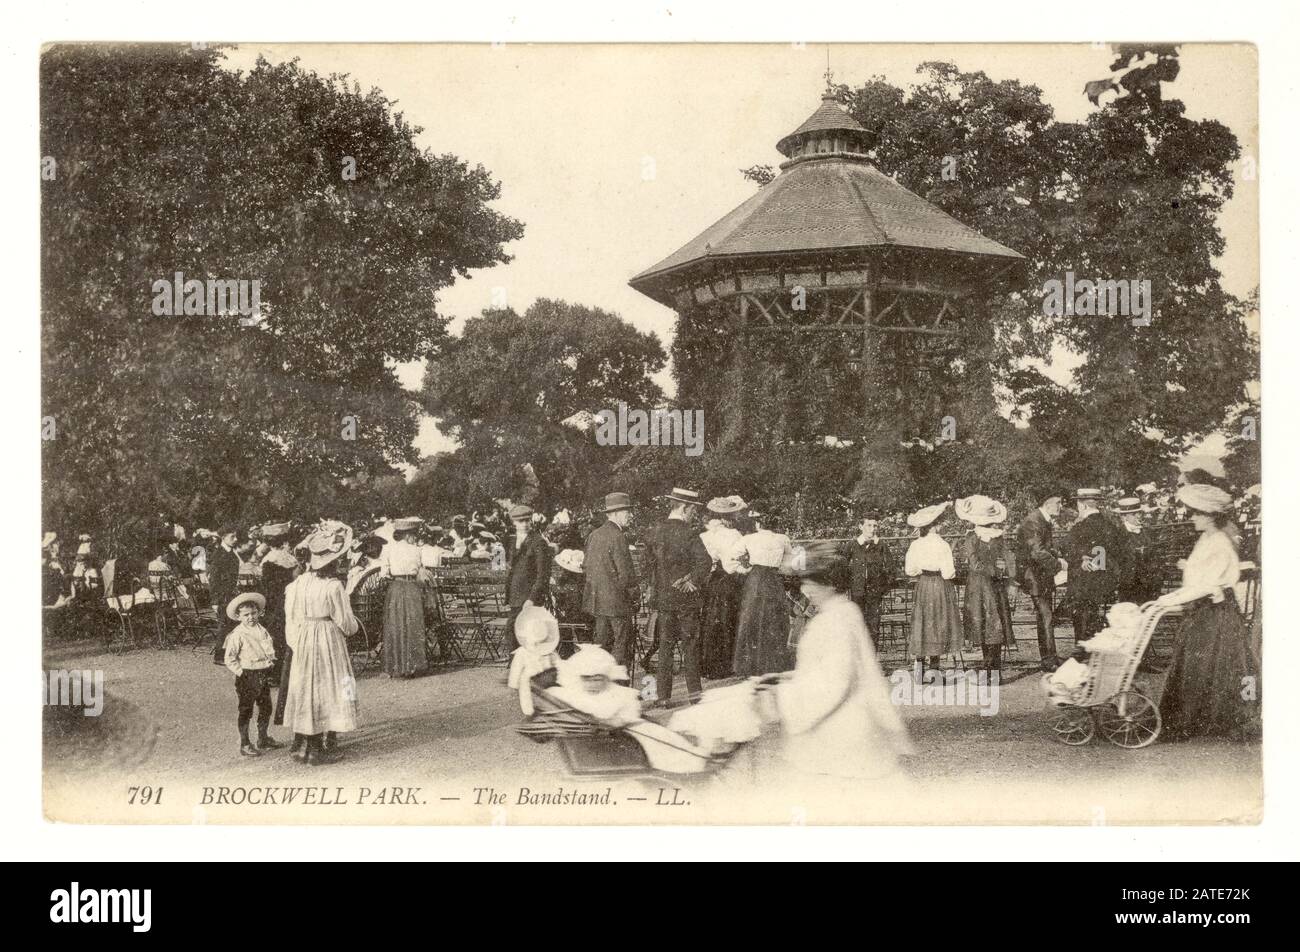 Carte postale originale de l'époque édouardienne des visiteurs qui profitent d'une journée à Brockwell Park avec kiosque à musique et spectateurs, Lambeth, Londres, vers 1910 Banque D'Images